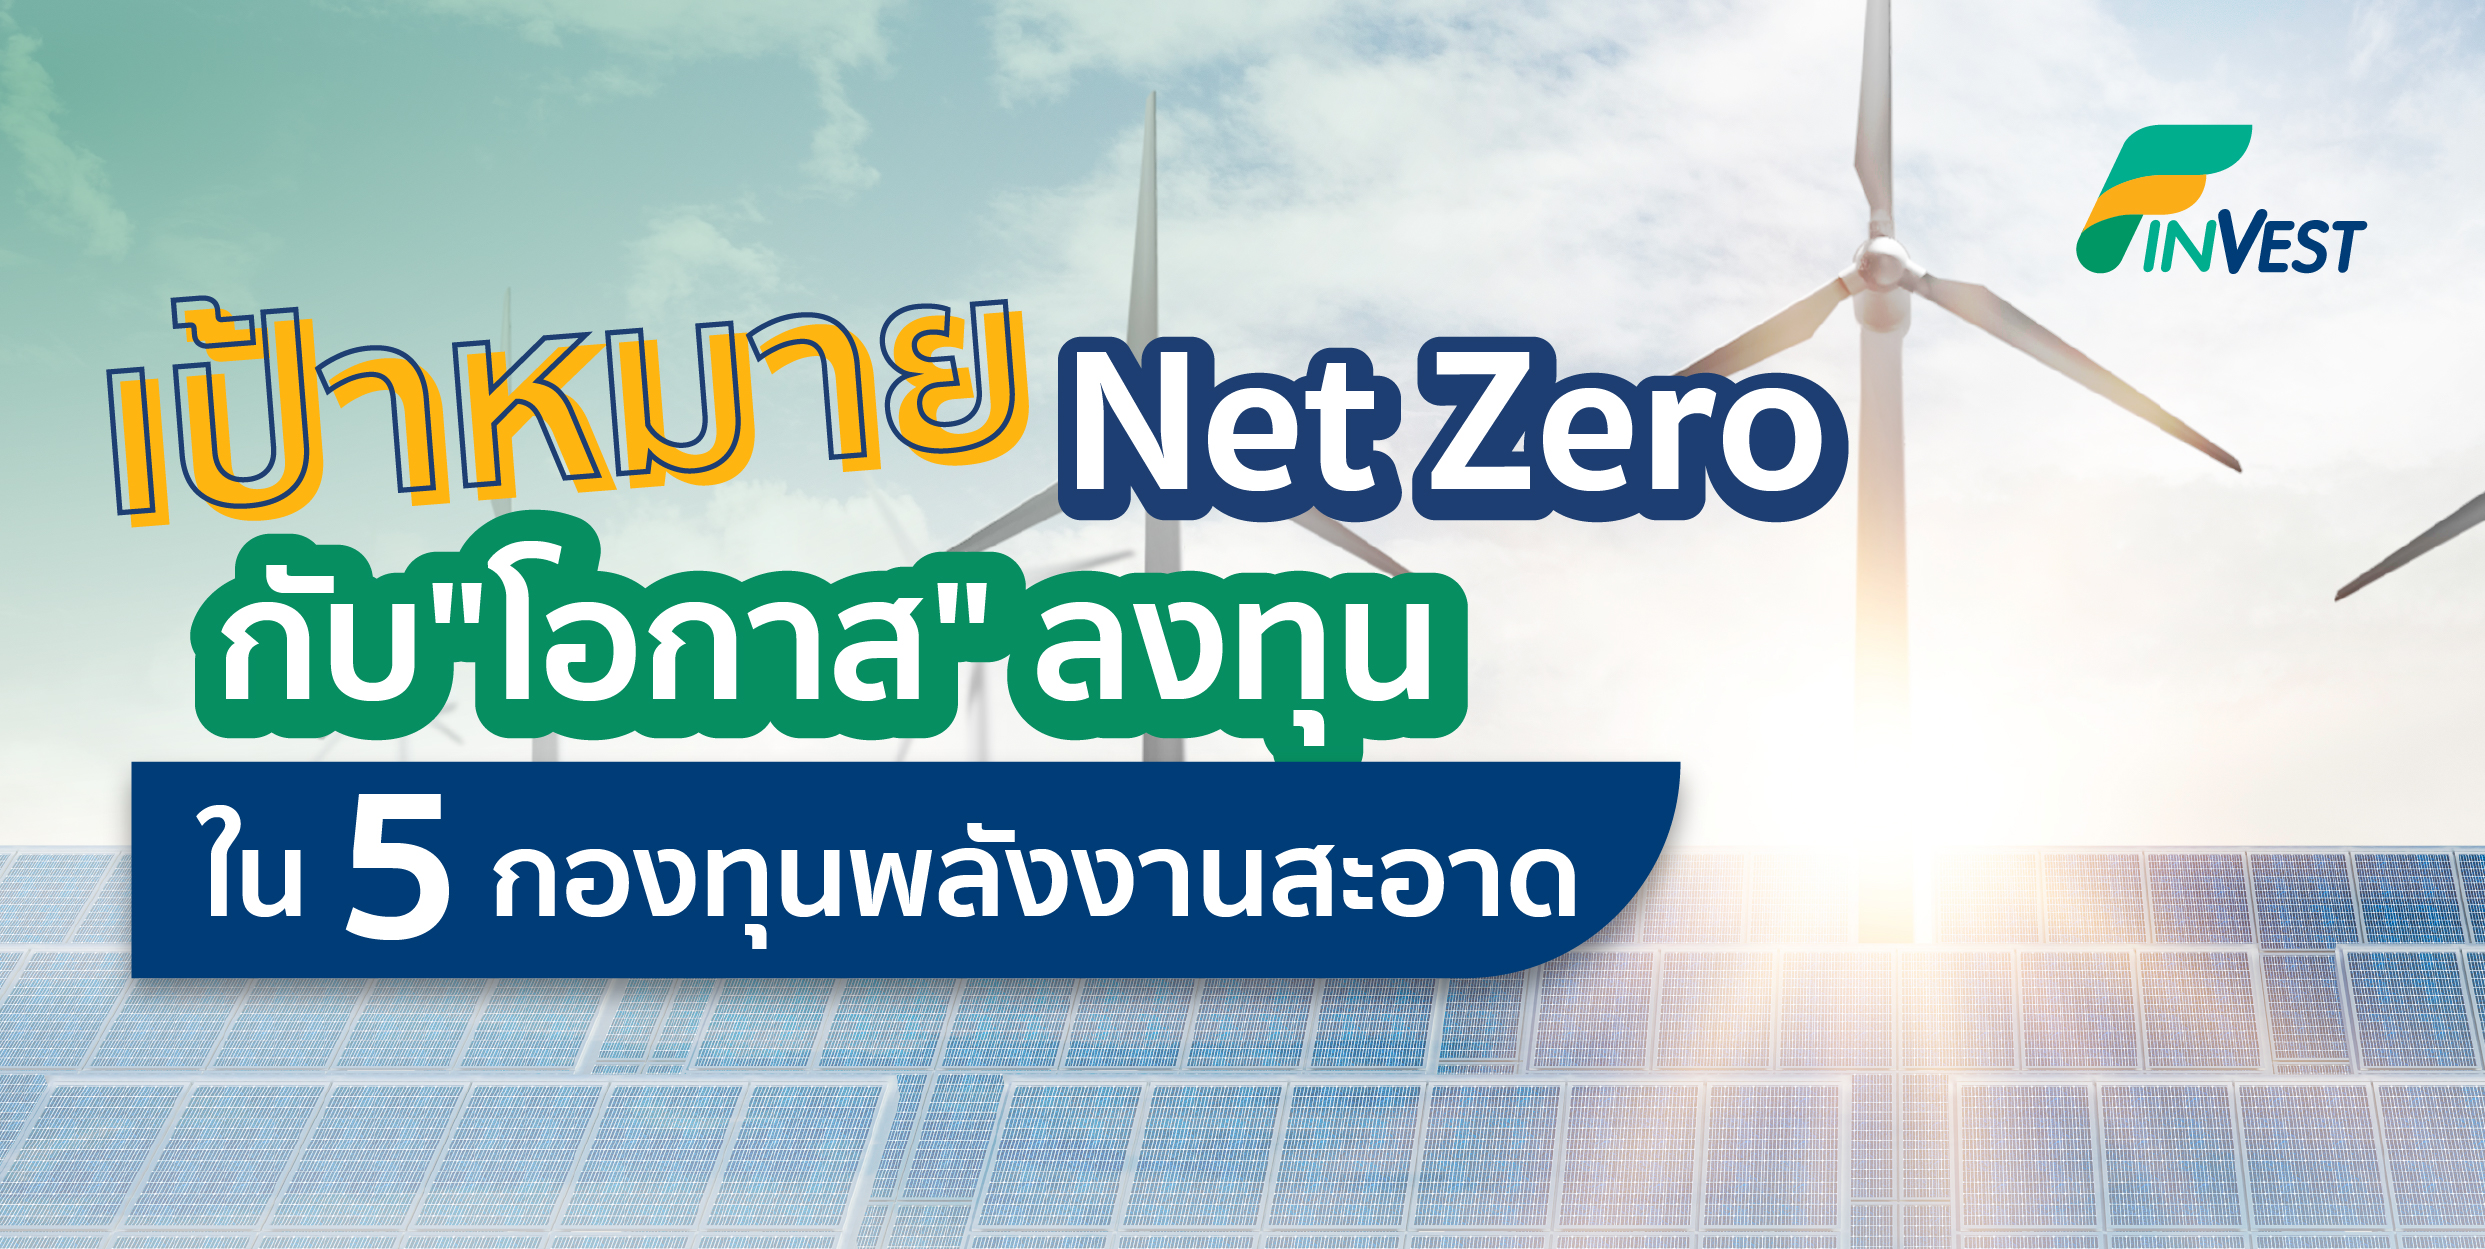 เป้าหมาย Net Zero กับ ”โอกาสการลงทุน” ที่ห้ามพลาด ใน 5 กองทุนพลังงานสะอาด